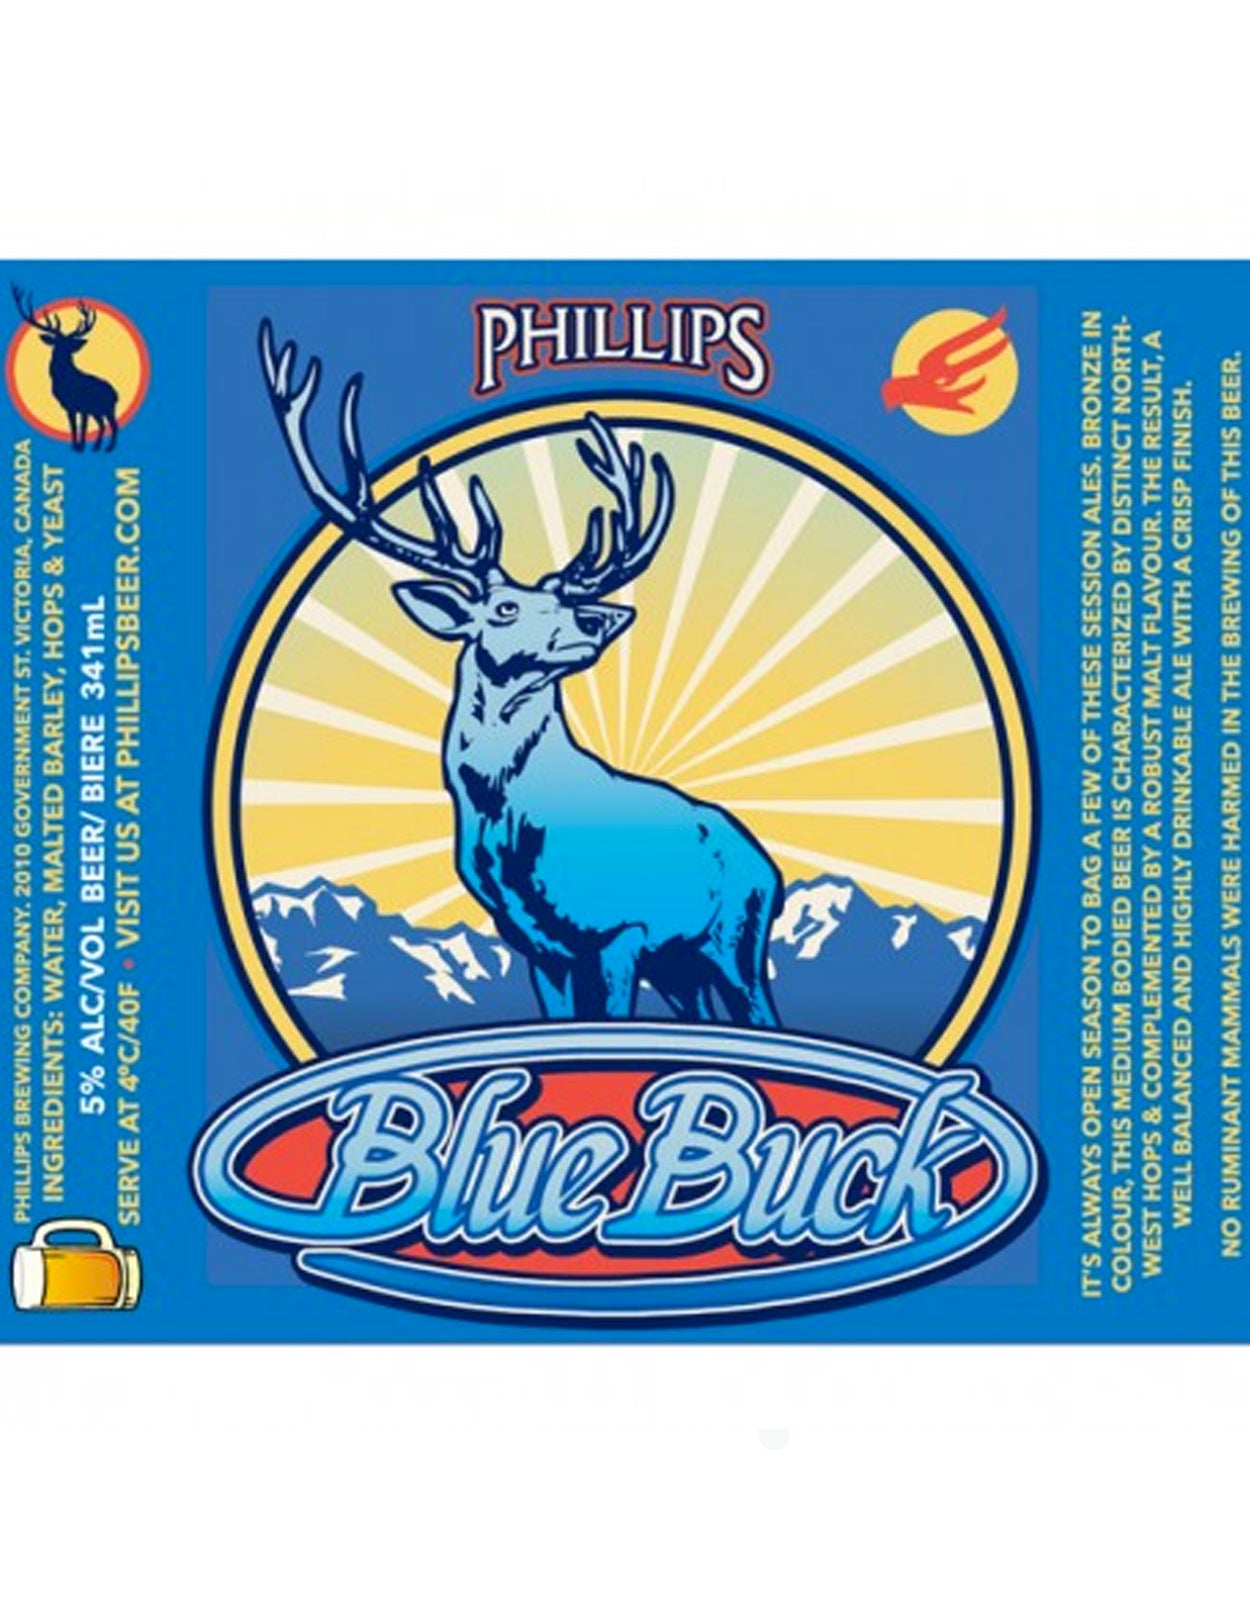 Phillips Blue Buck - 50 Litre Keg